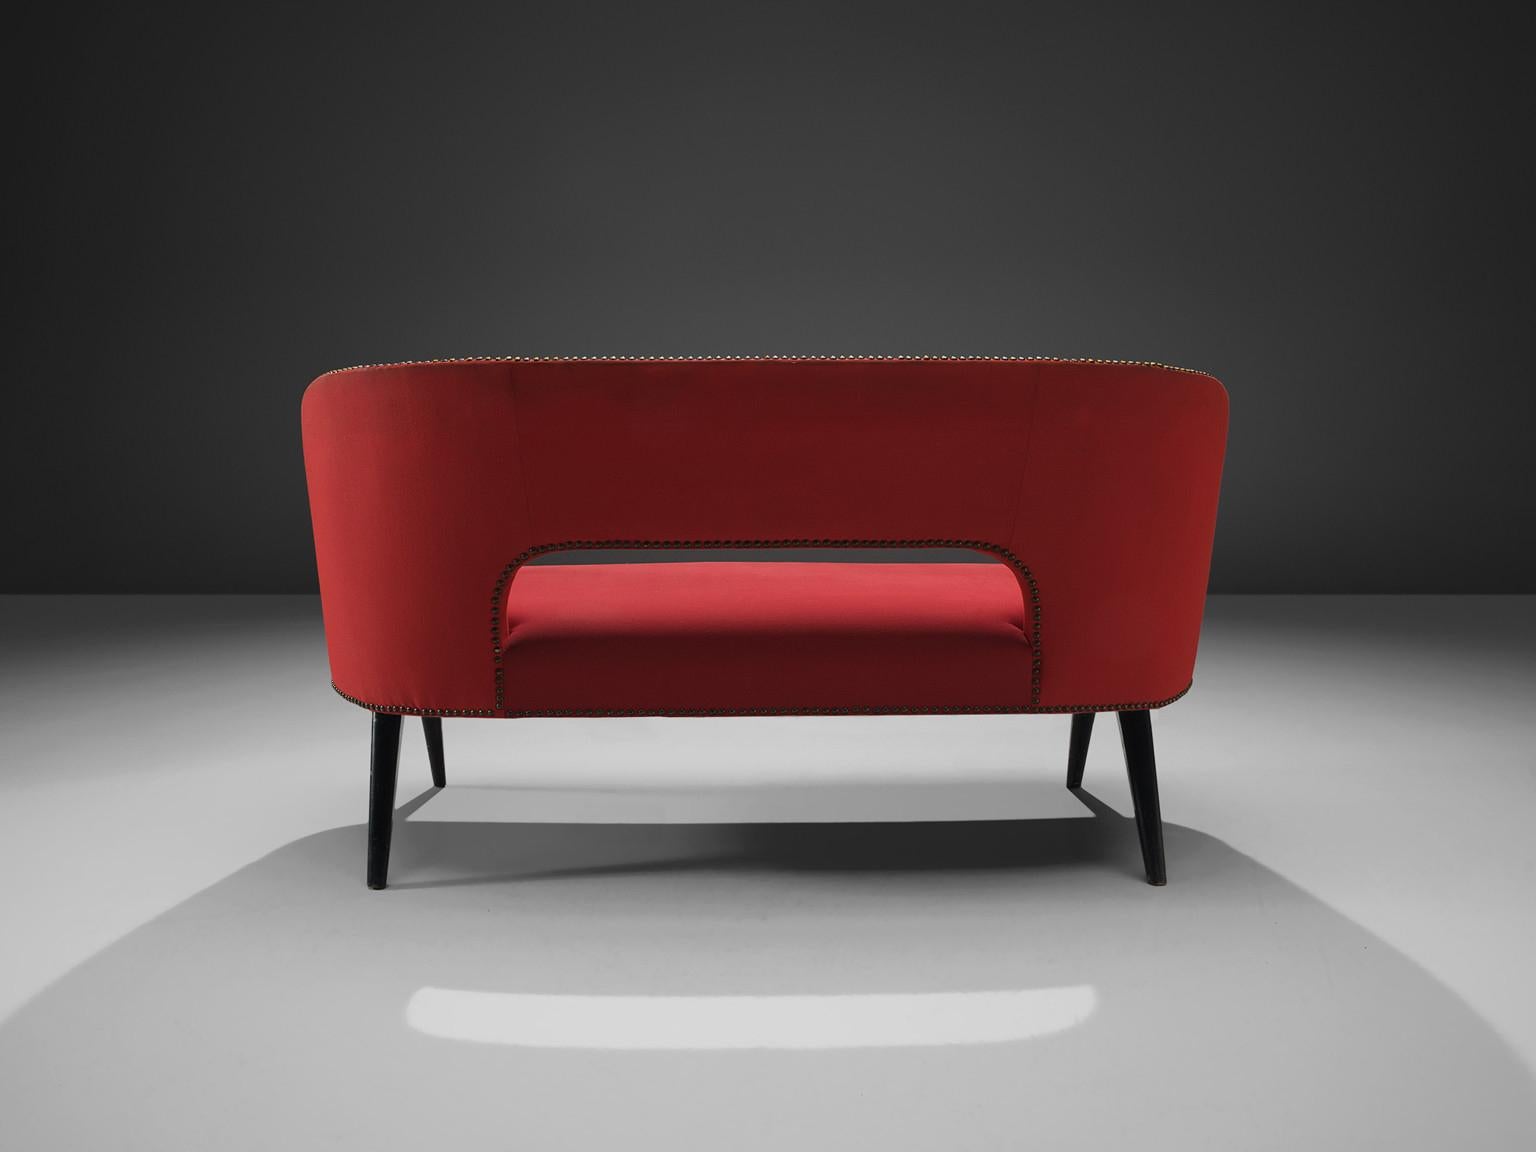 Canapé, tissu rouge, bois, métal, Italie, vers 1960

Cet élégant canapé italien à deux places présente une couleur rouge frappante et peut être placé dans une entrée ou servir de goût de délicatesse dans n'importe quelle pièce. Le design présente